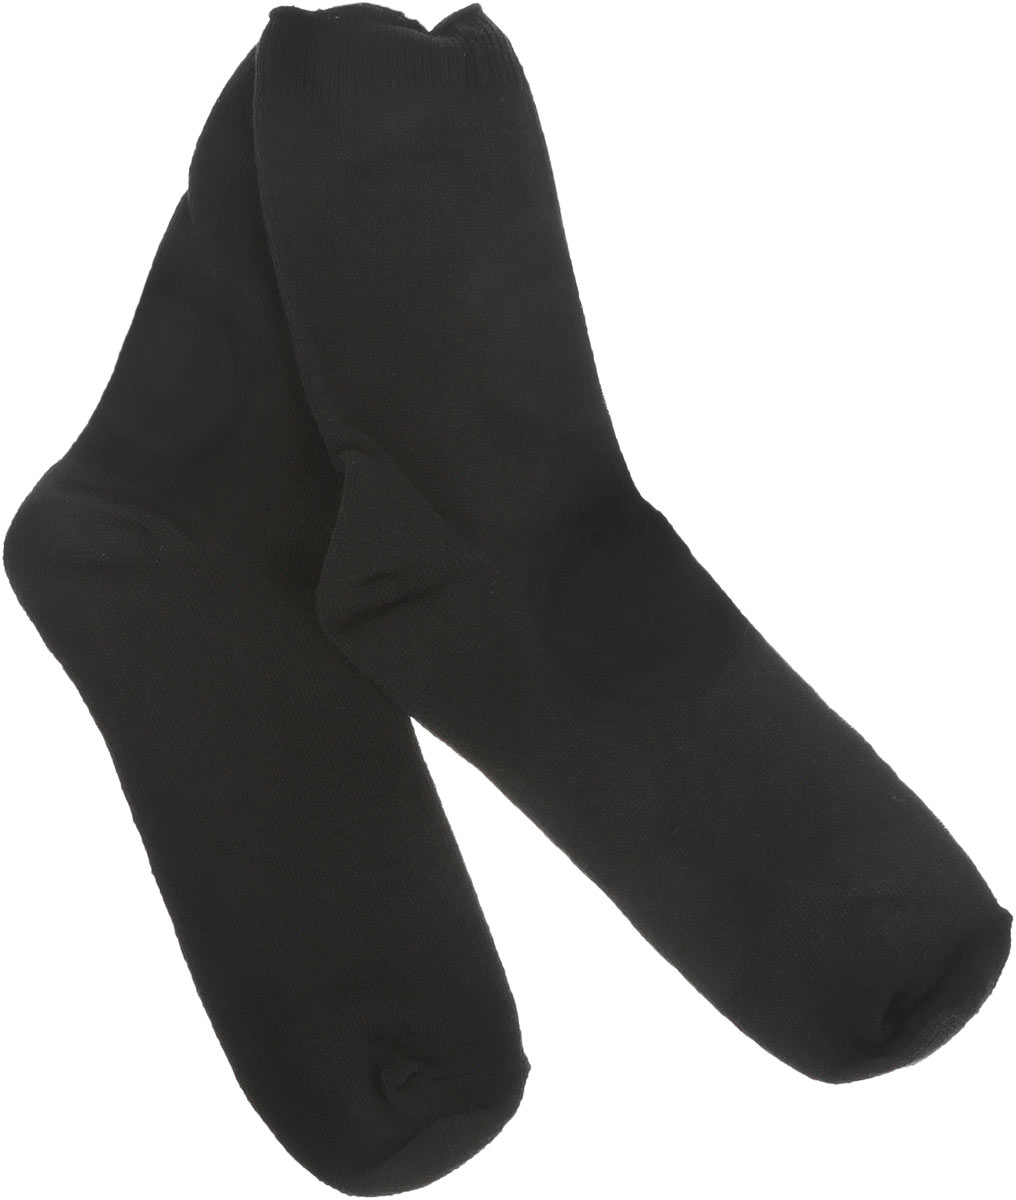 Носки Smart Textile Гигиена-грибок, противогрибковые и антимикробные, цвет: черный. Н413. Размер 27